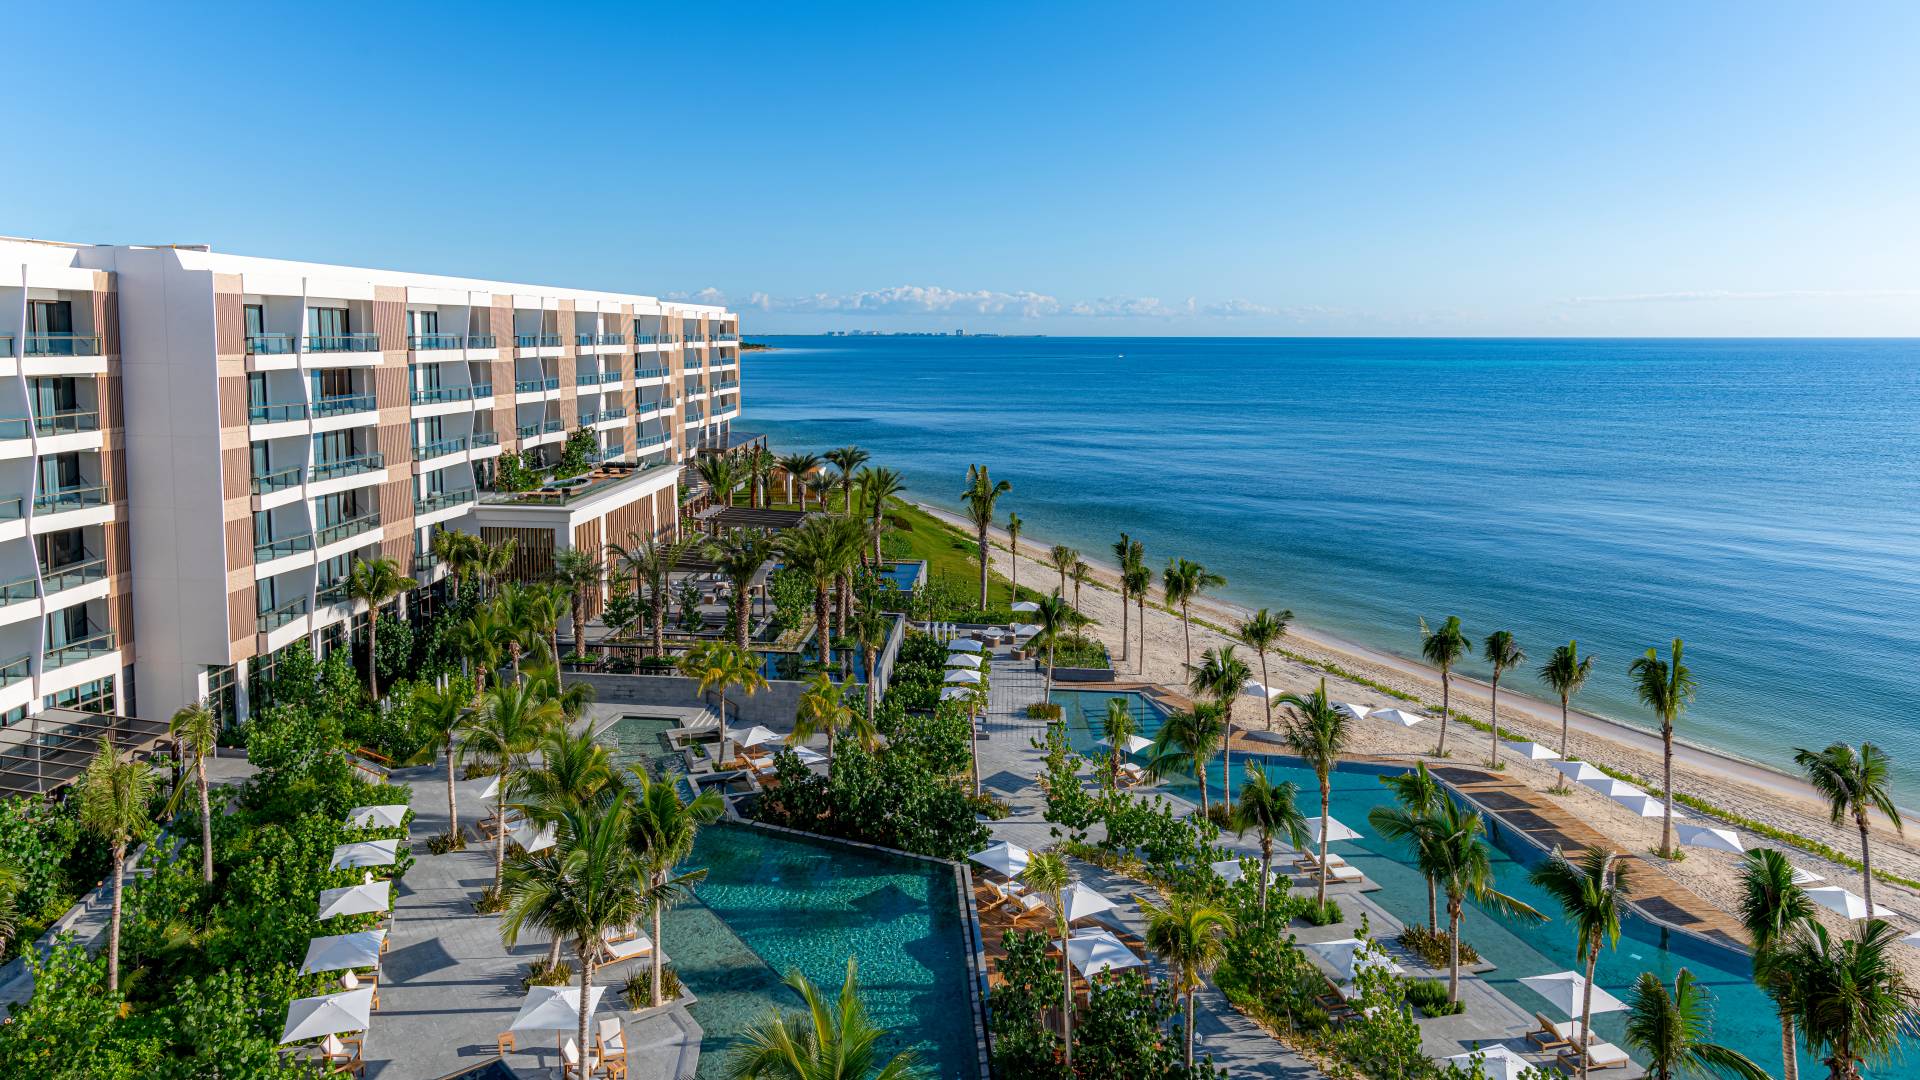 Fachada del hotel, piscinas al aire libre y playa cercana